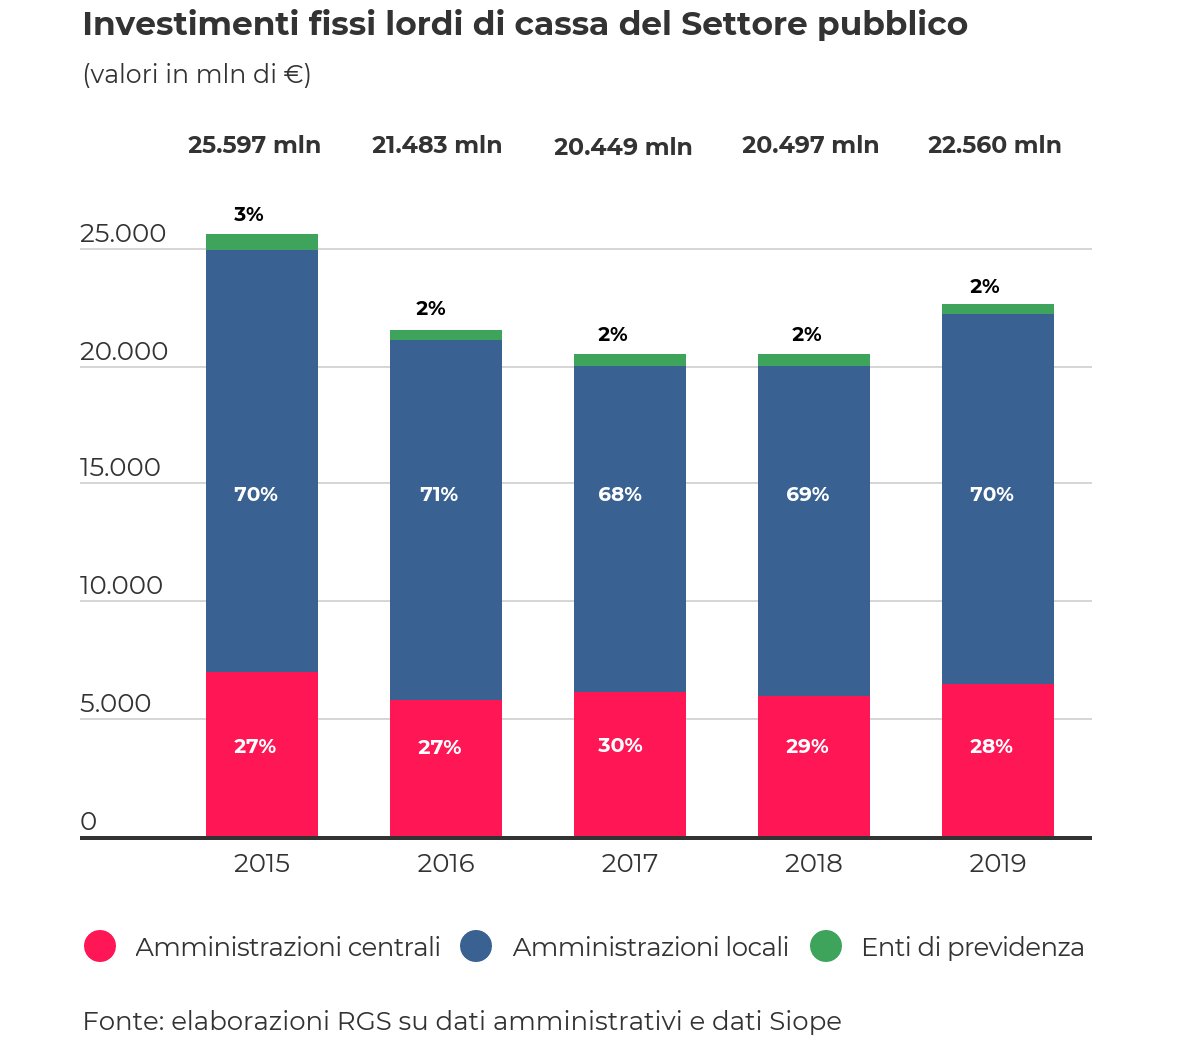 Investimenti fissi lordi di cassa del Settore Pubblico suddivisi per tipologia di amministrazione